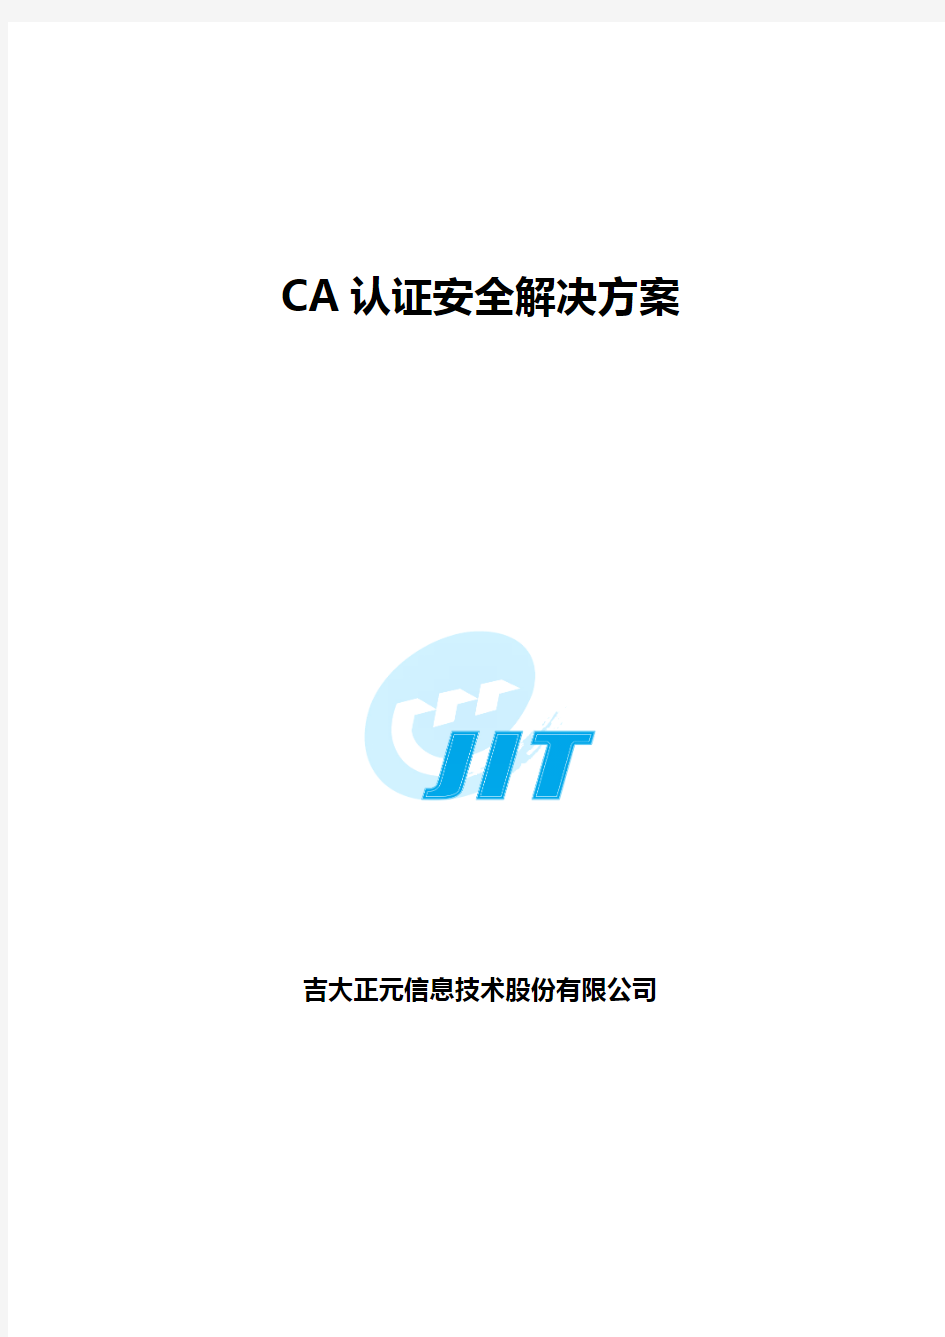 CA认证解决方案-CA Server 网关汇总